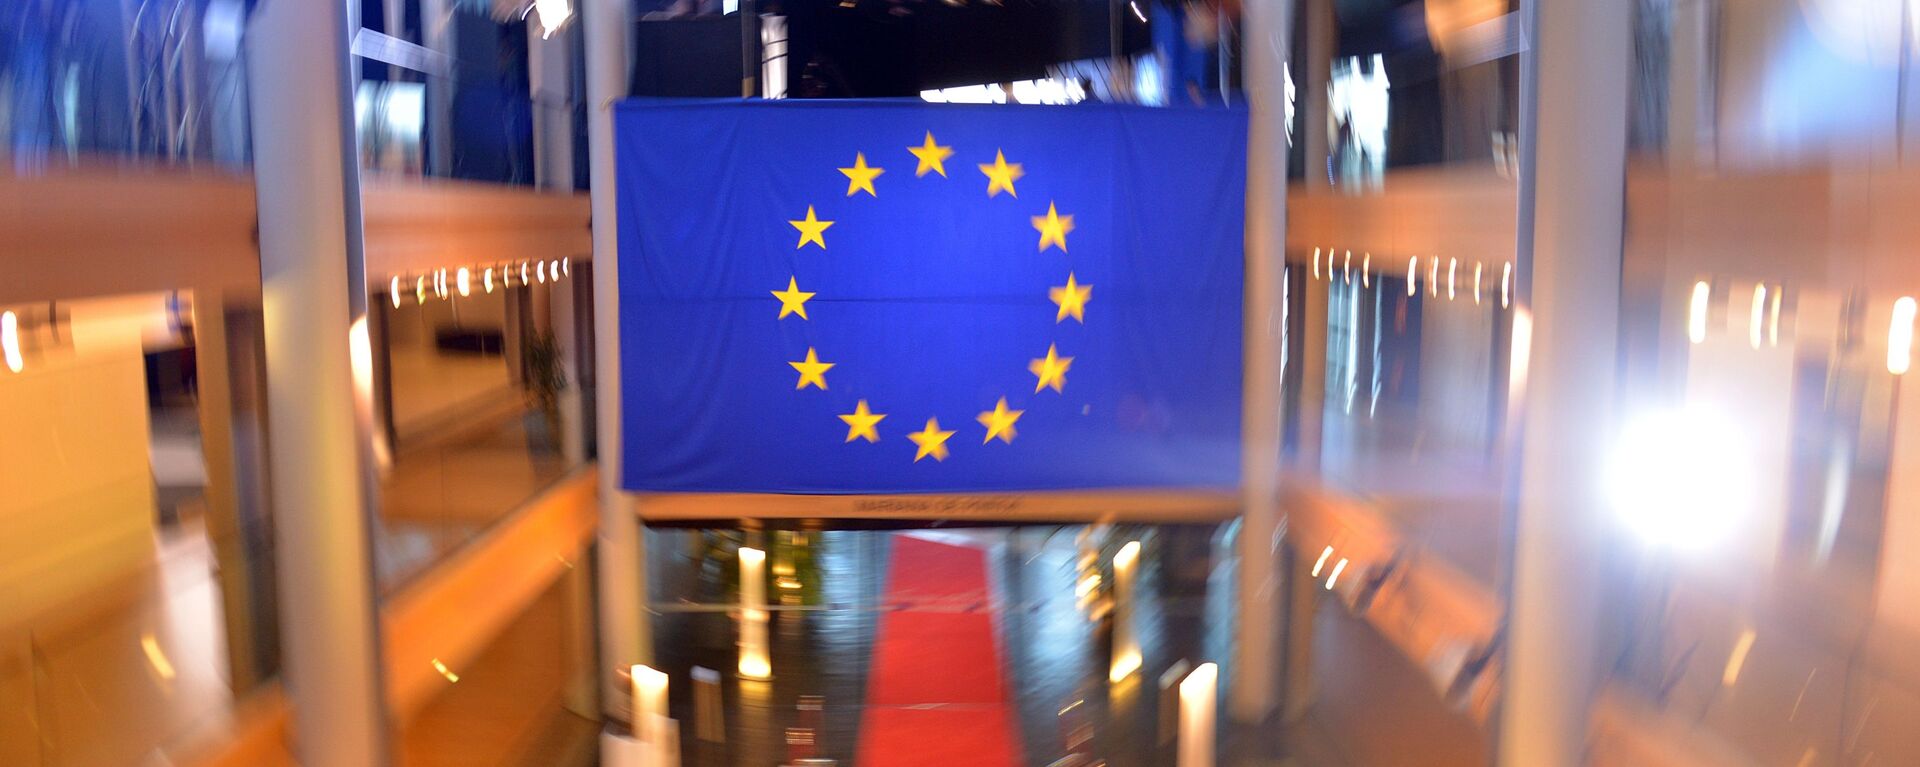 Флаг Евросоюза в главном здании Совета Европы в Страсбурге - Sputnik Латвия, 1920, 07.05.2021